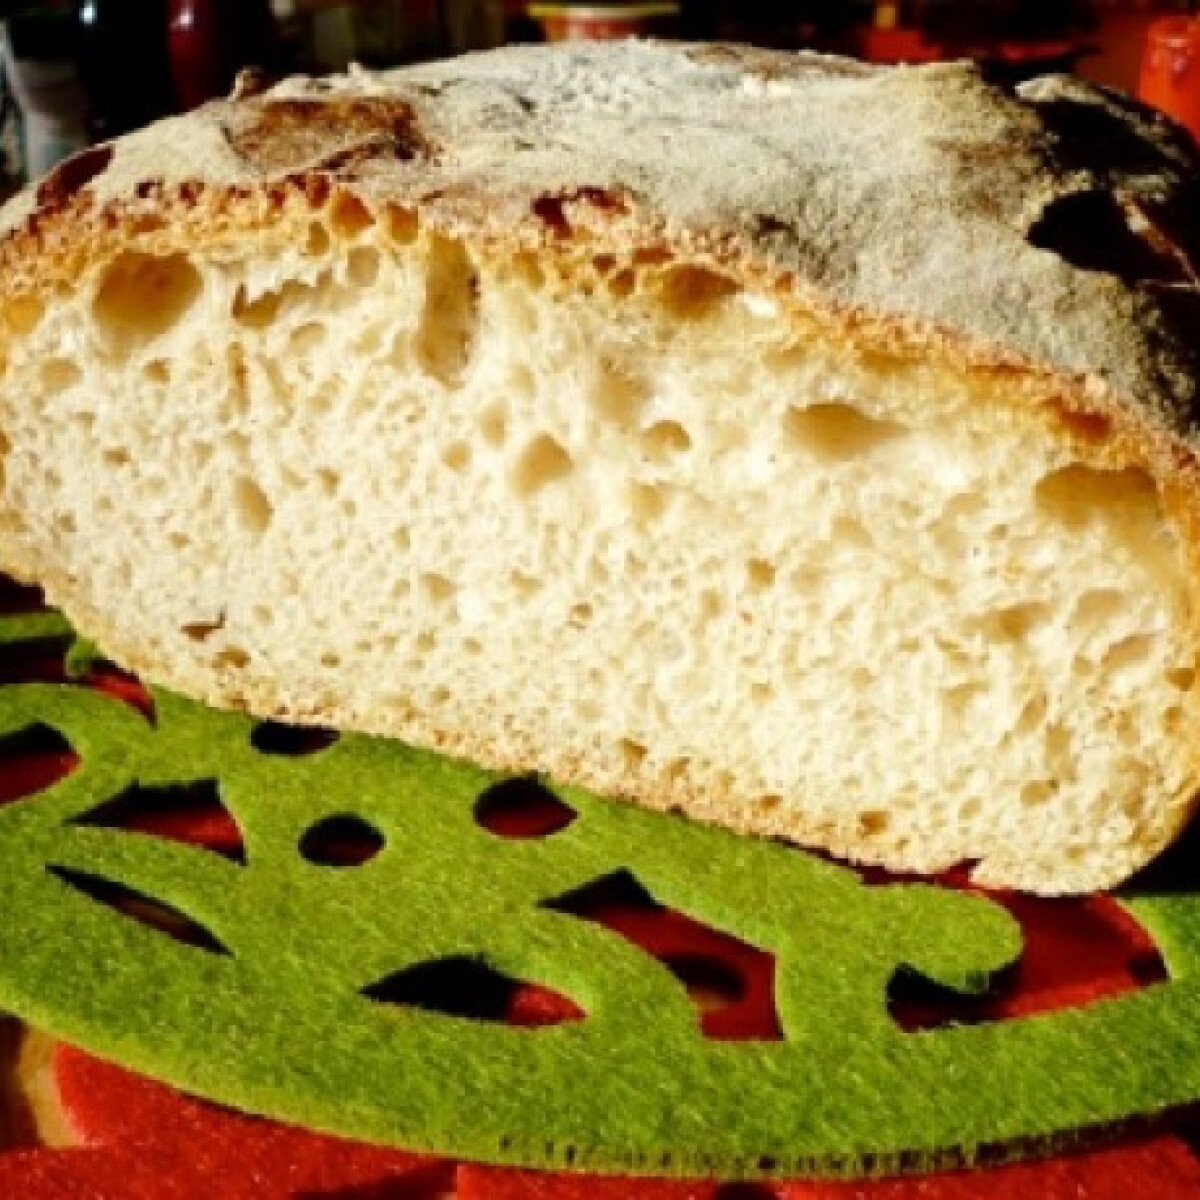 Szabad-e kenyeret enni a fogyókúra alatt (és úgy általában)?